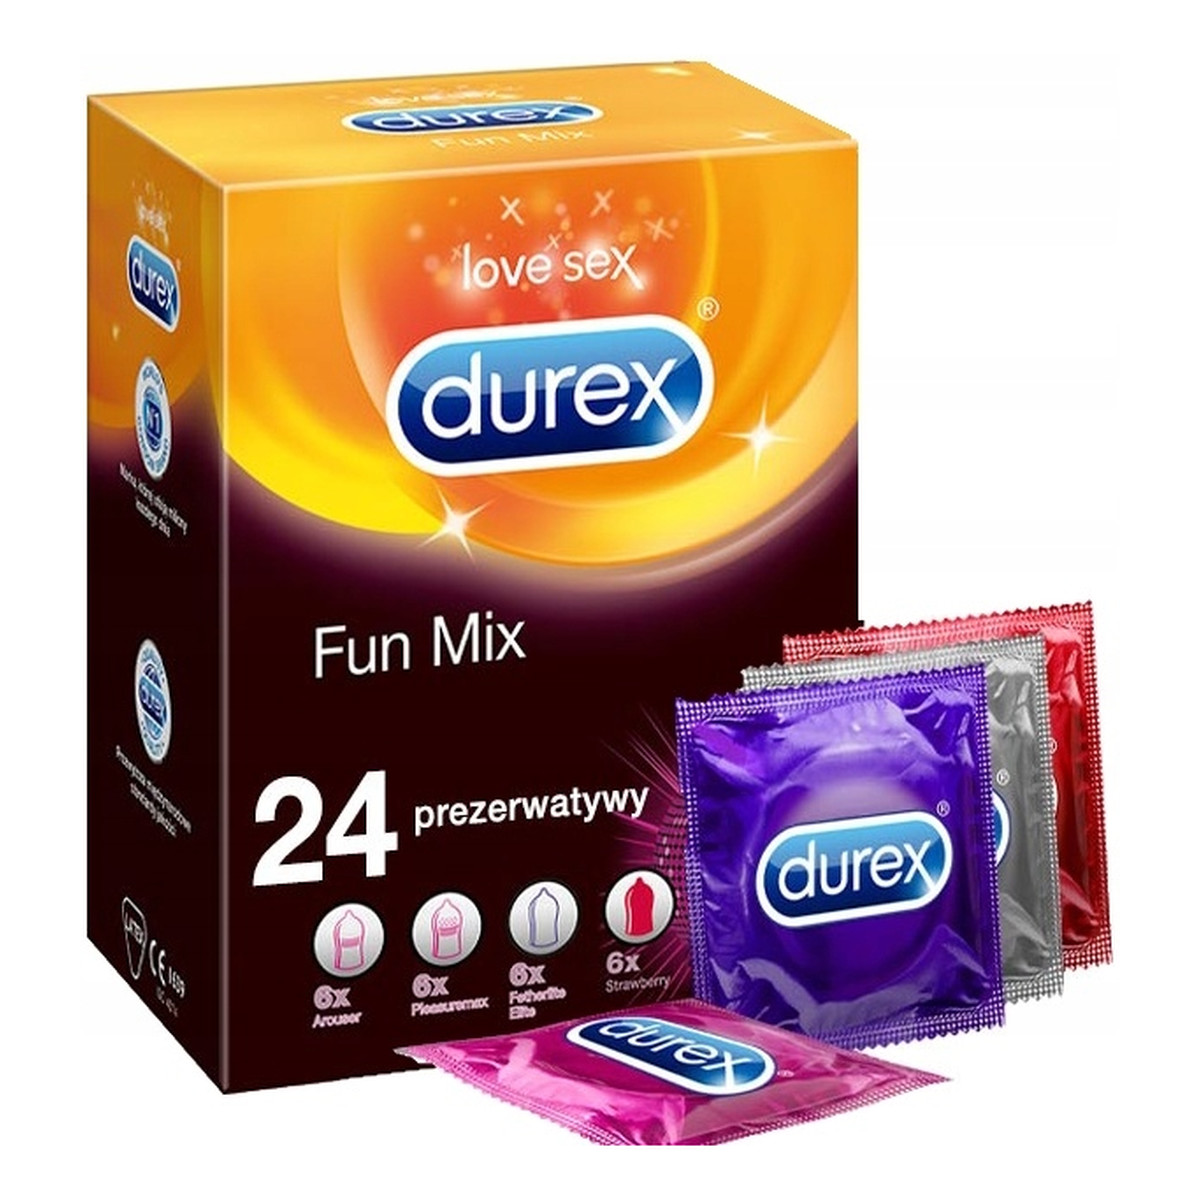 Durex Prezerwatywy fun mix lateksowe 24 szt